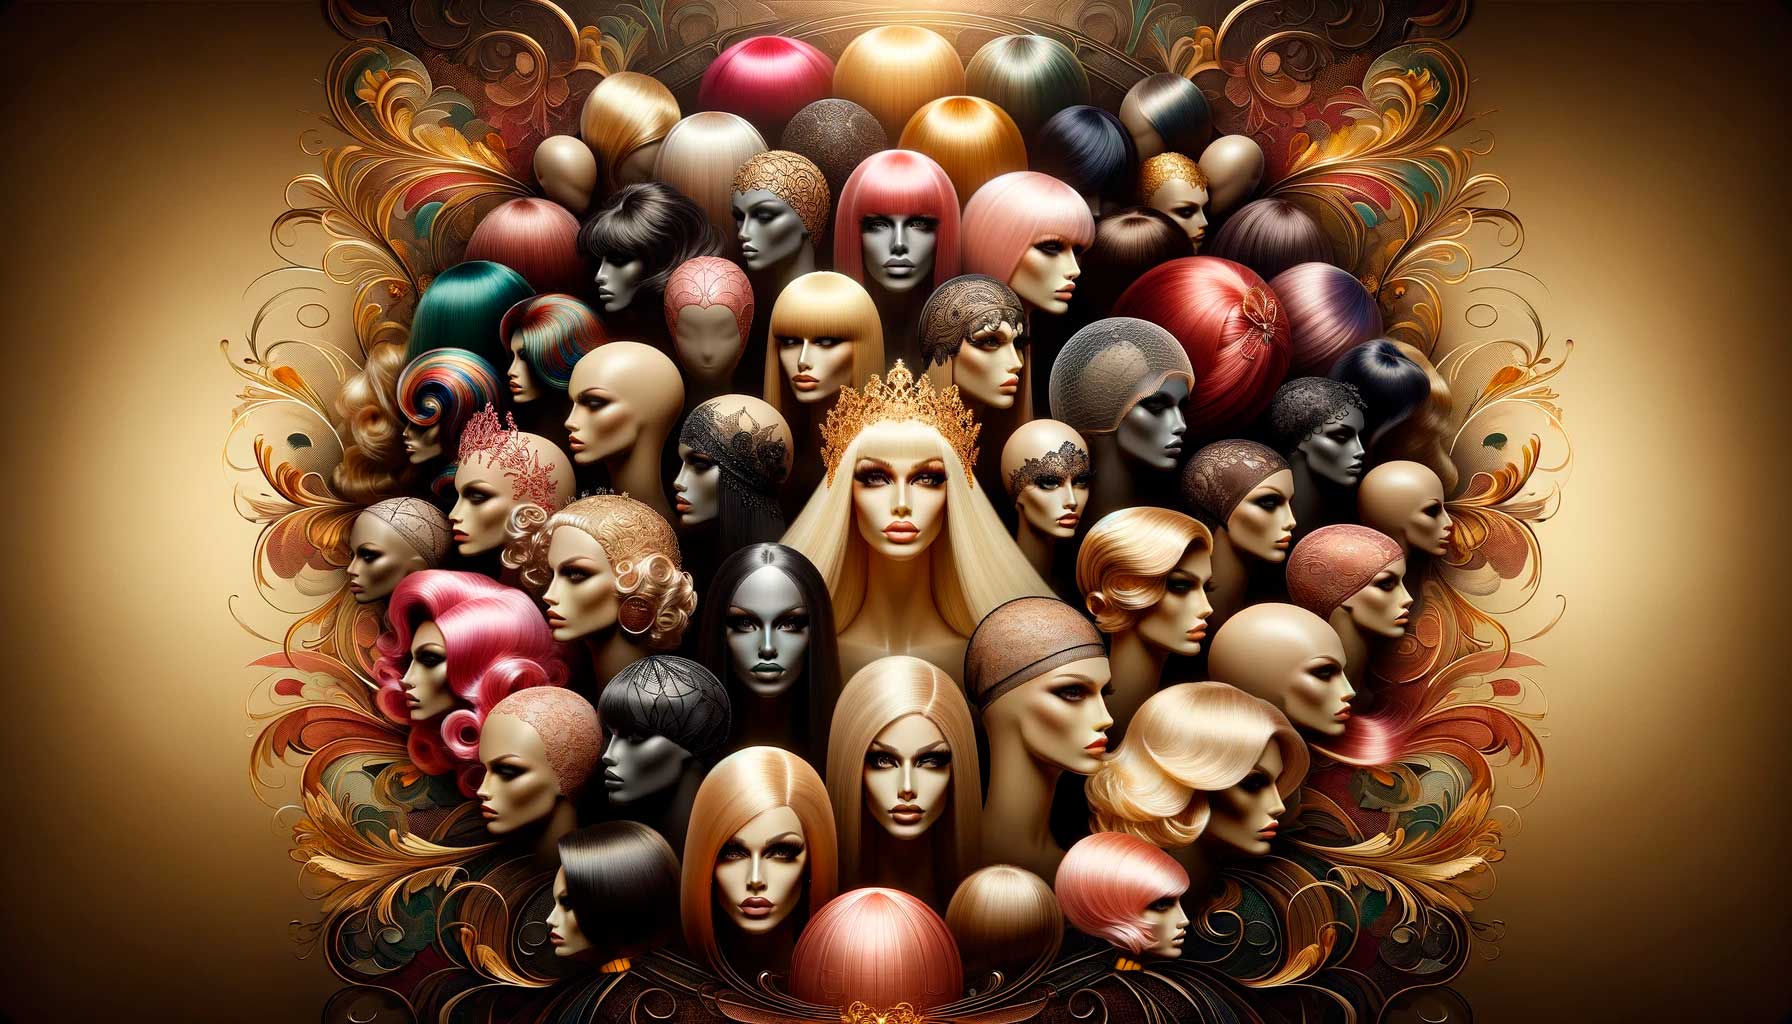 Amplia gama de redecillas de peluca para drag queens, destacando lujo y diversidad